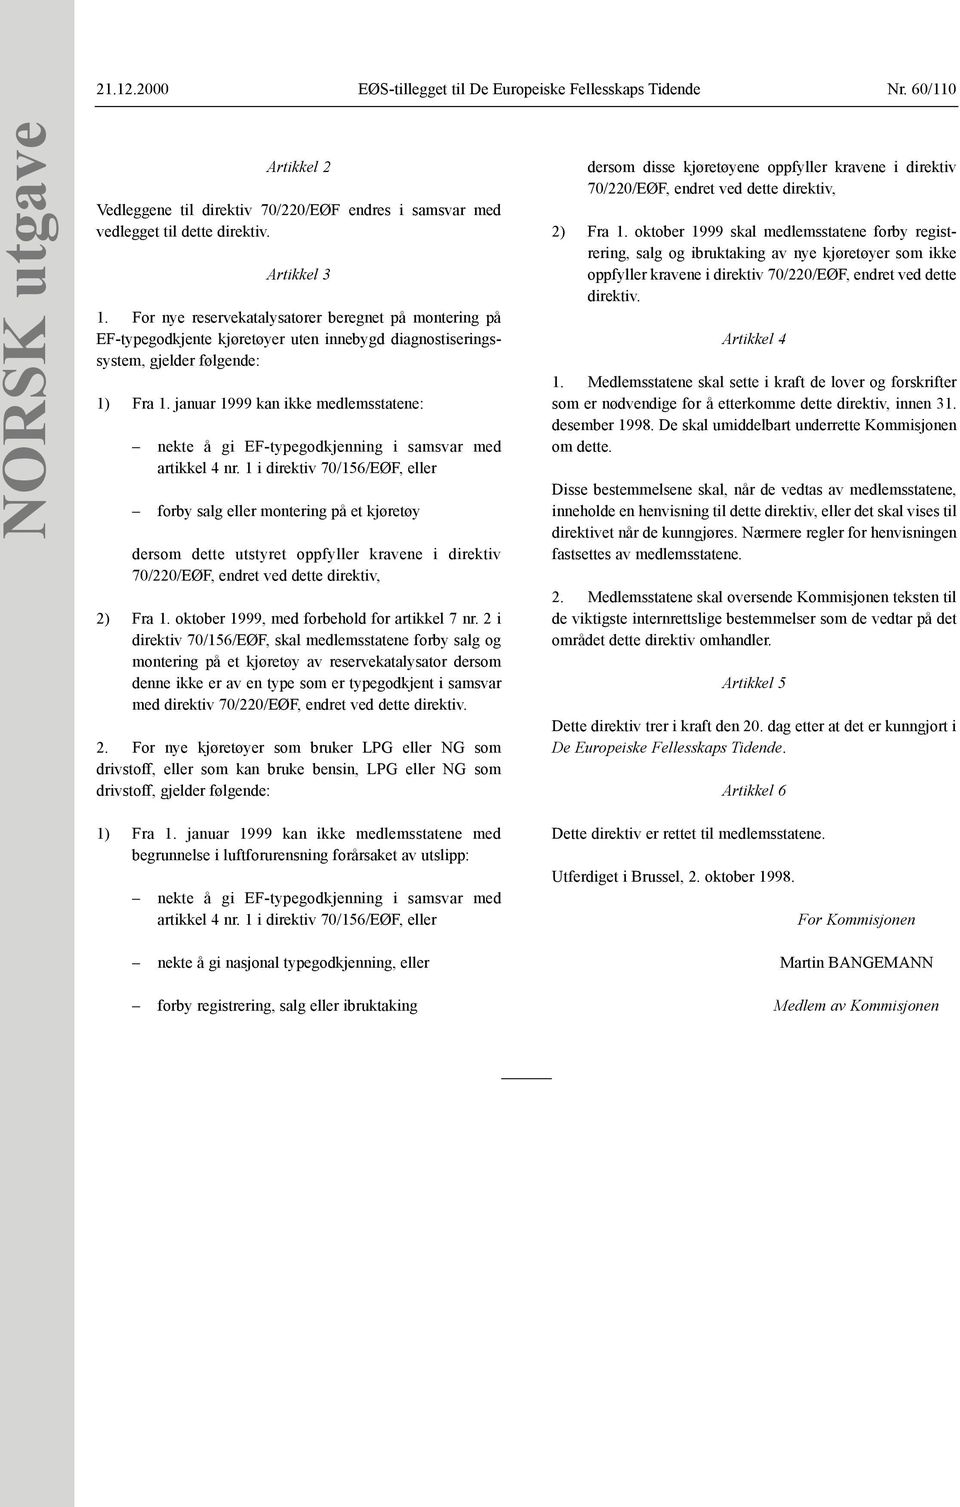 januar 1999 kan ikke medlemsstatene: nekte å gi EF-typegodkjenning i samsvar med artikkel 4 nr.